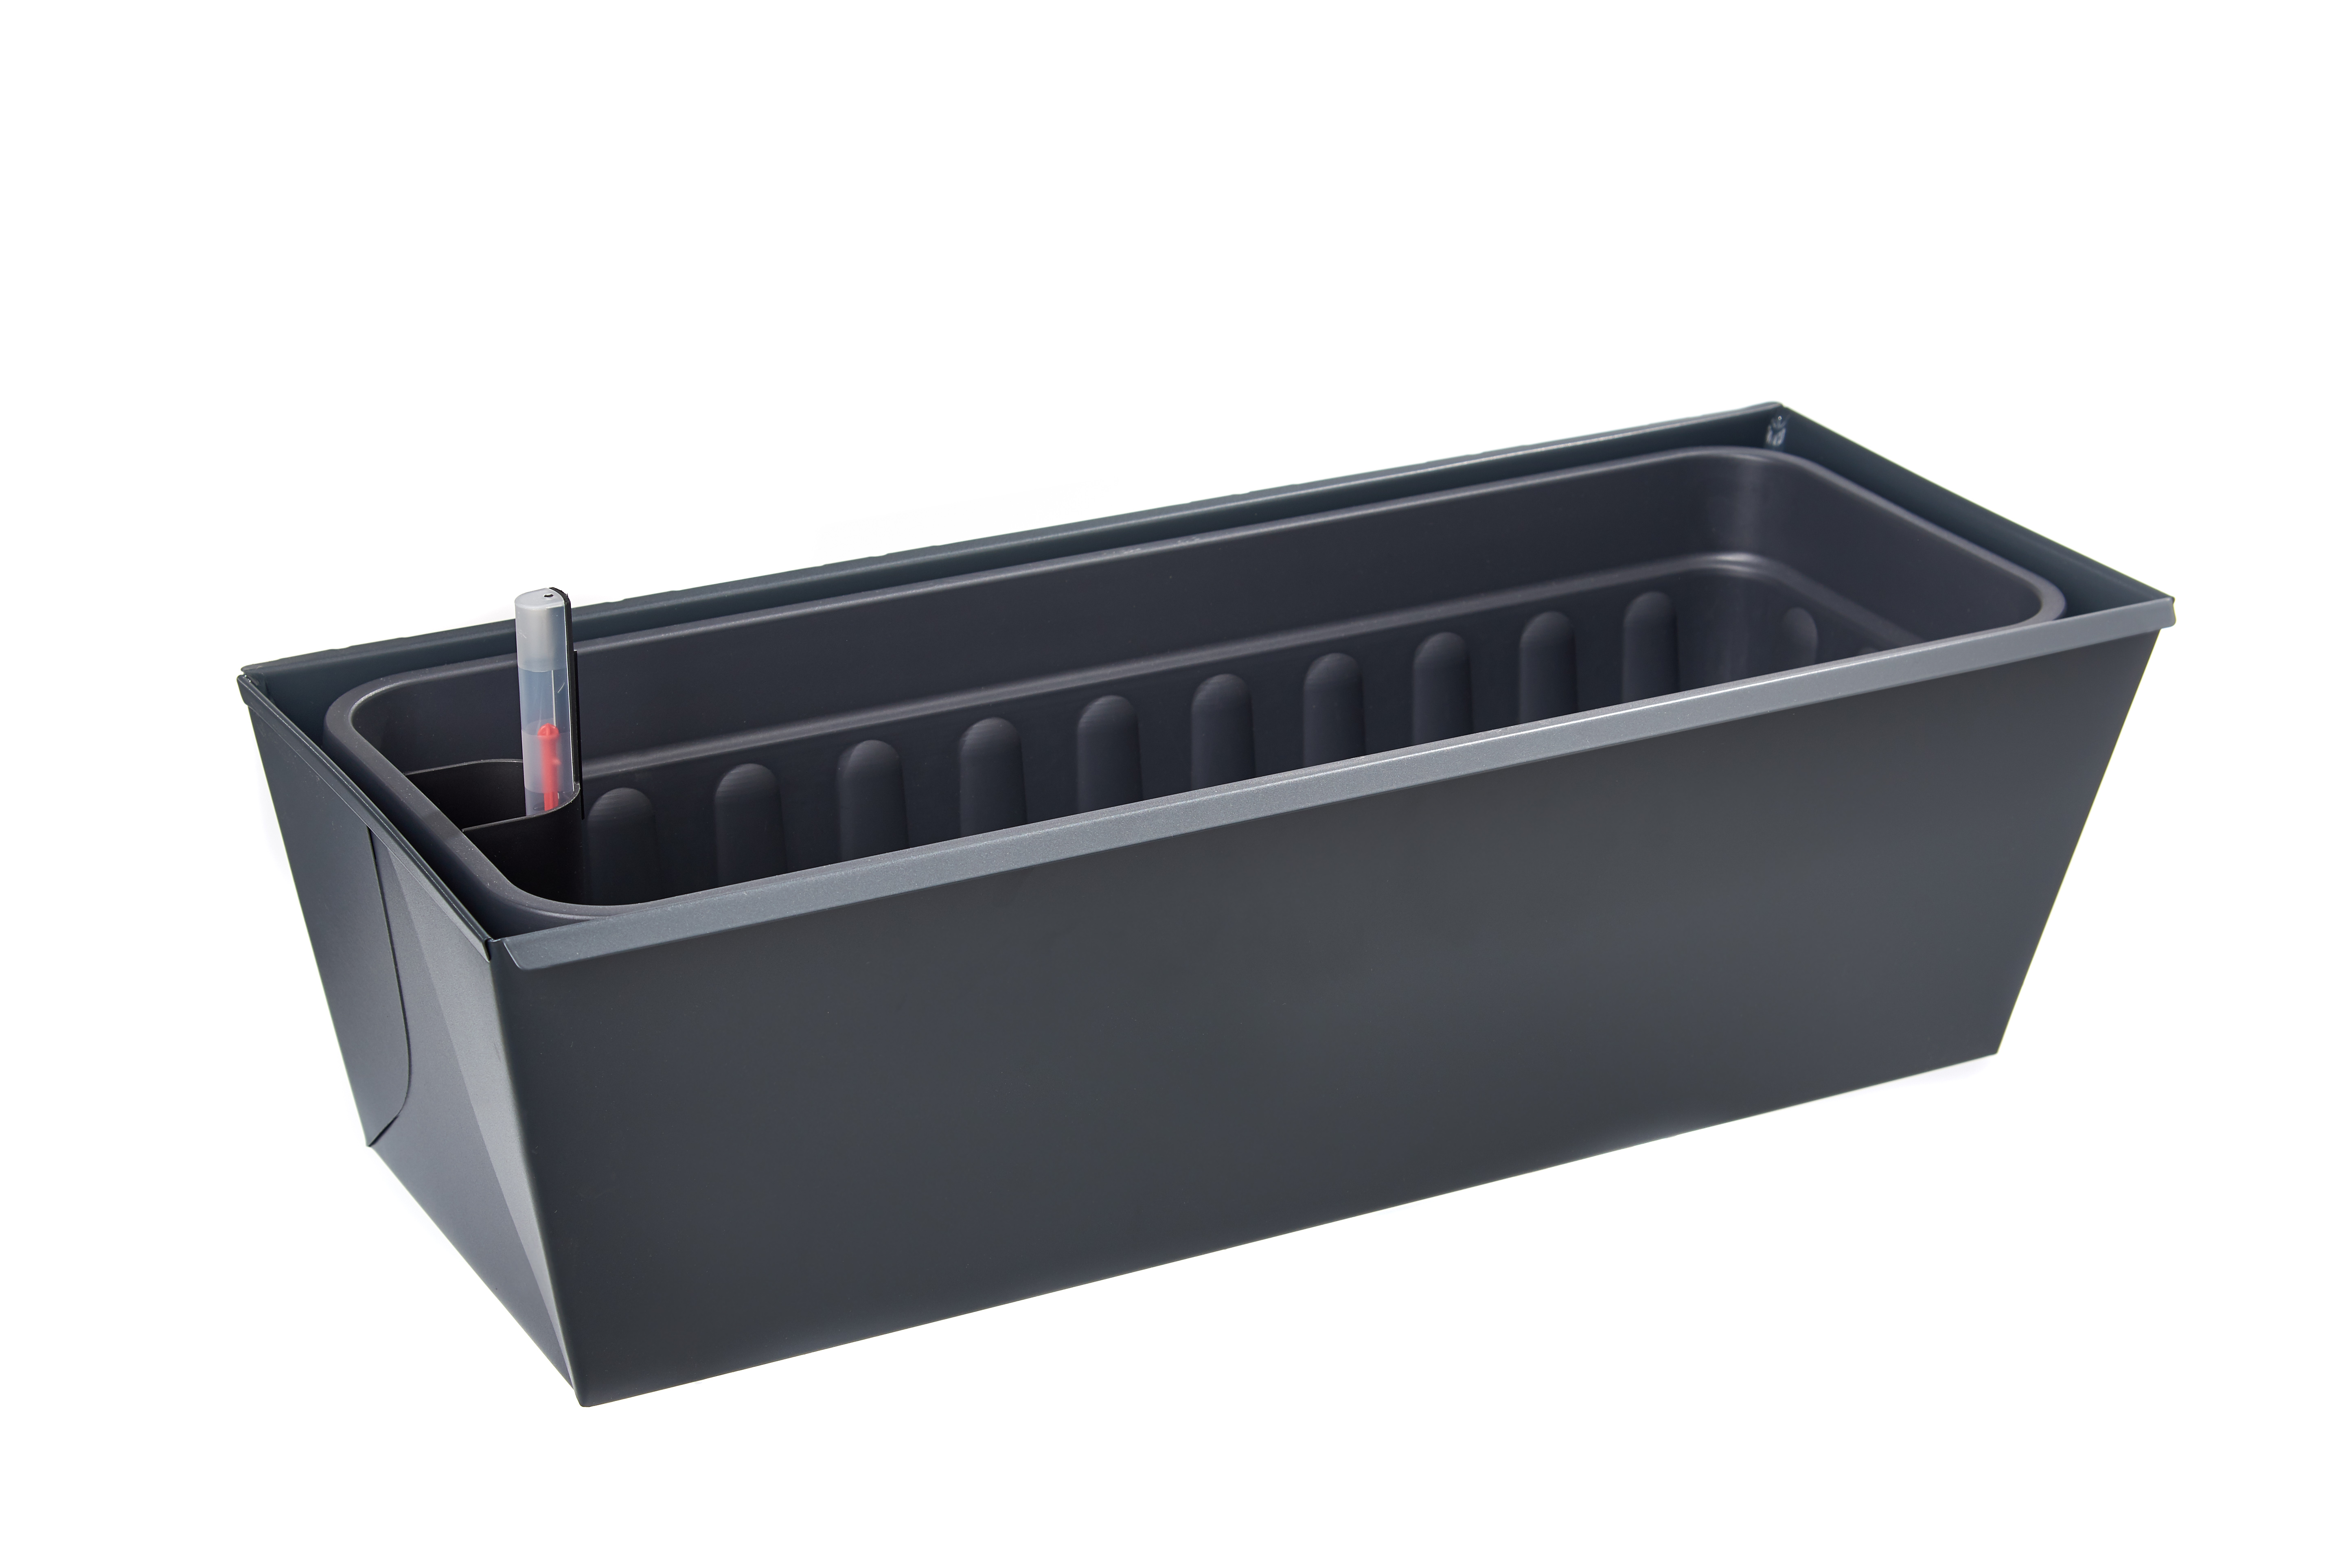 B-Ware: gabioka flowerbox 60cm de luxe anthrazit pulverbeschichtet (RAL 7016 glatt matt) mit Wasserstandsanzeige und Wasserspeicher 